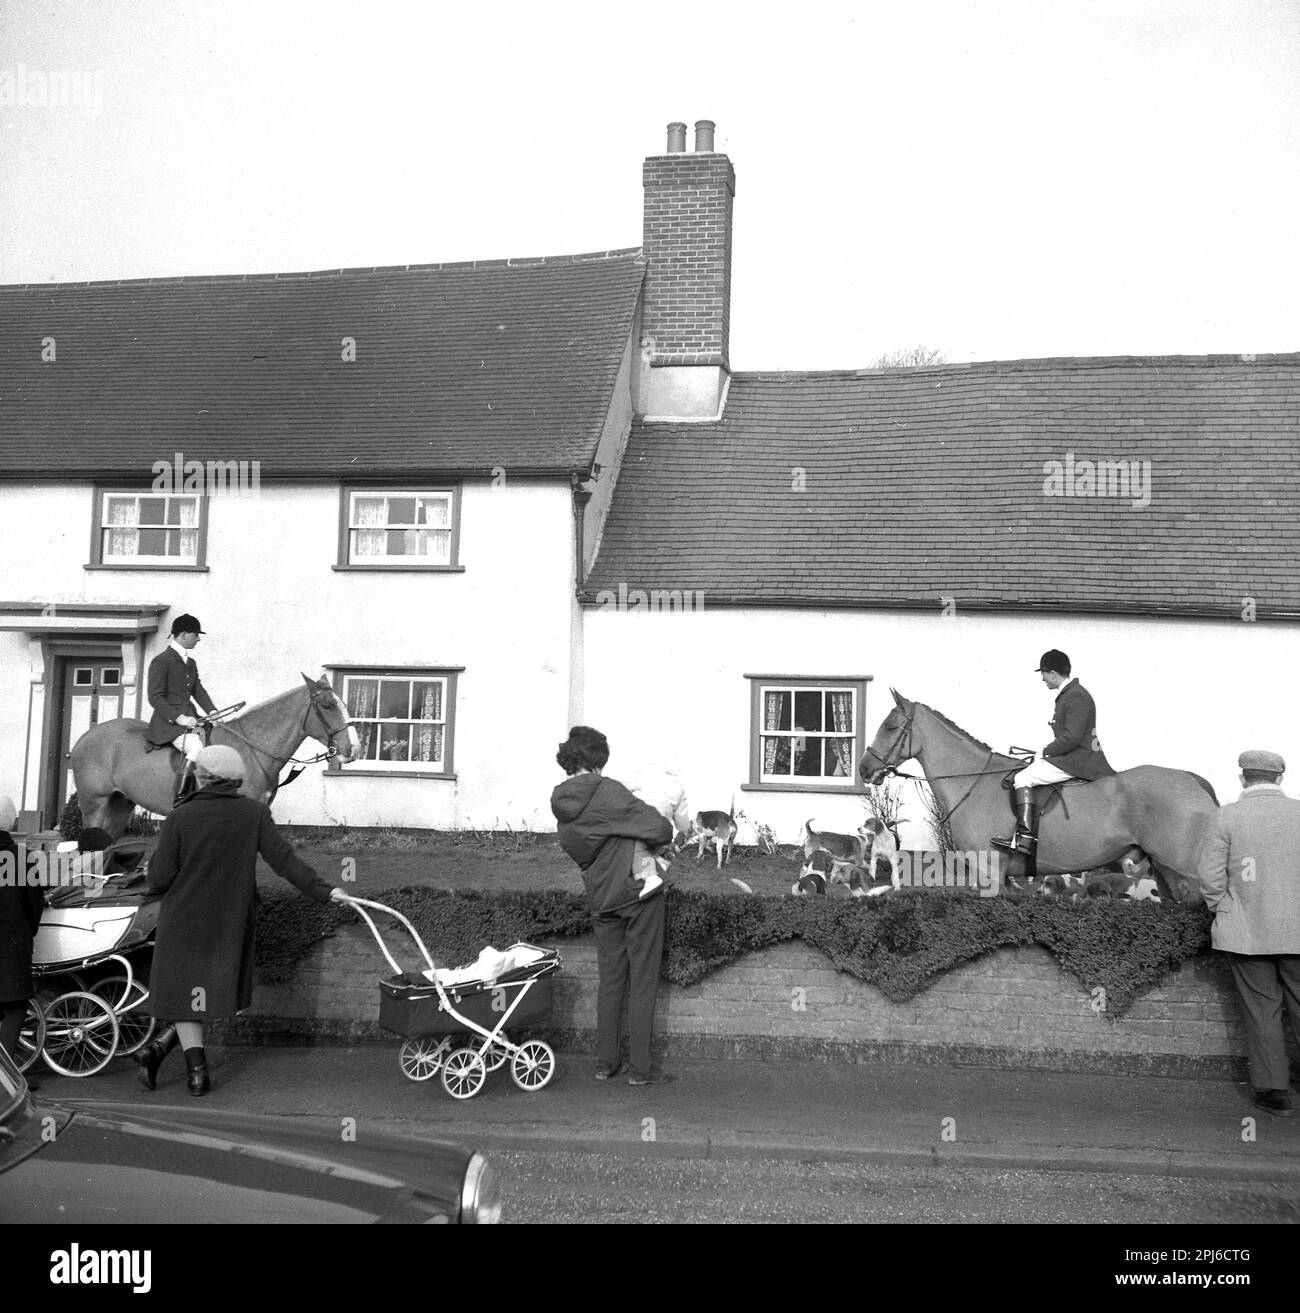 1965, hounds storico di Thurlow, cani e cavalli nel giardino anteriore del cottage, gente locale in piedi sul marciapiede, sguardo sopra, uno che tiene il suo bambino infante, accanto al passeggino, Inghilterra, Regno Unito. La caccia al giovedì è stata fondata nel 1858. Foto Stock